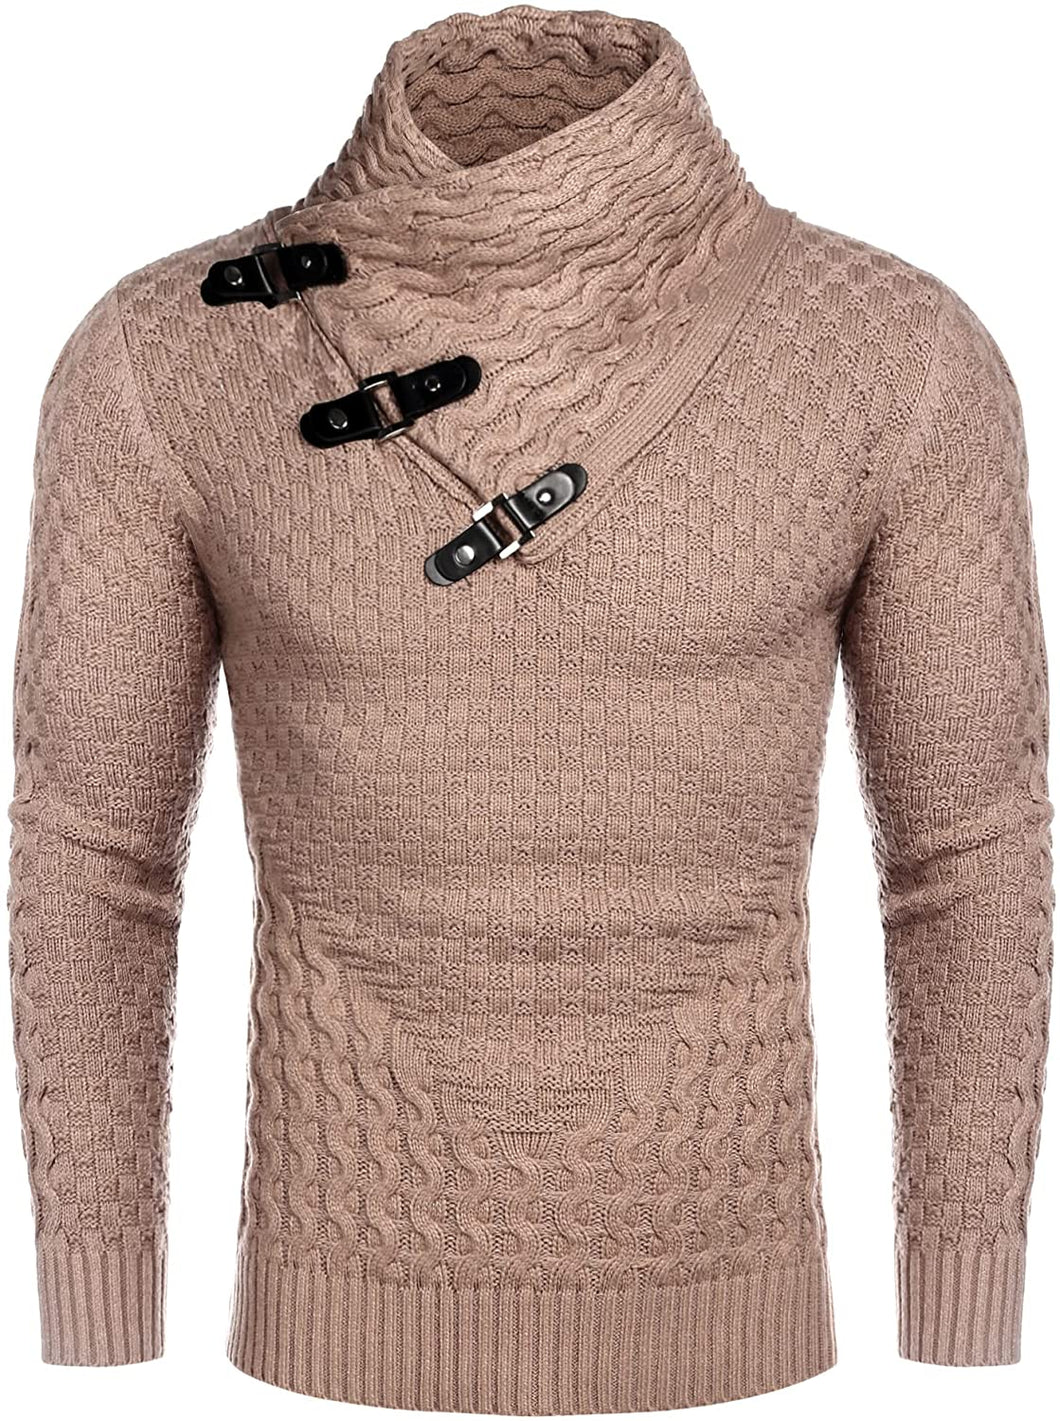 Men's Khaki Long Sleeve Slim Fit Designer Knitted Turtleneck Sweater